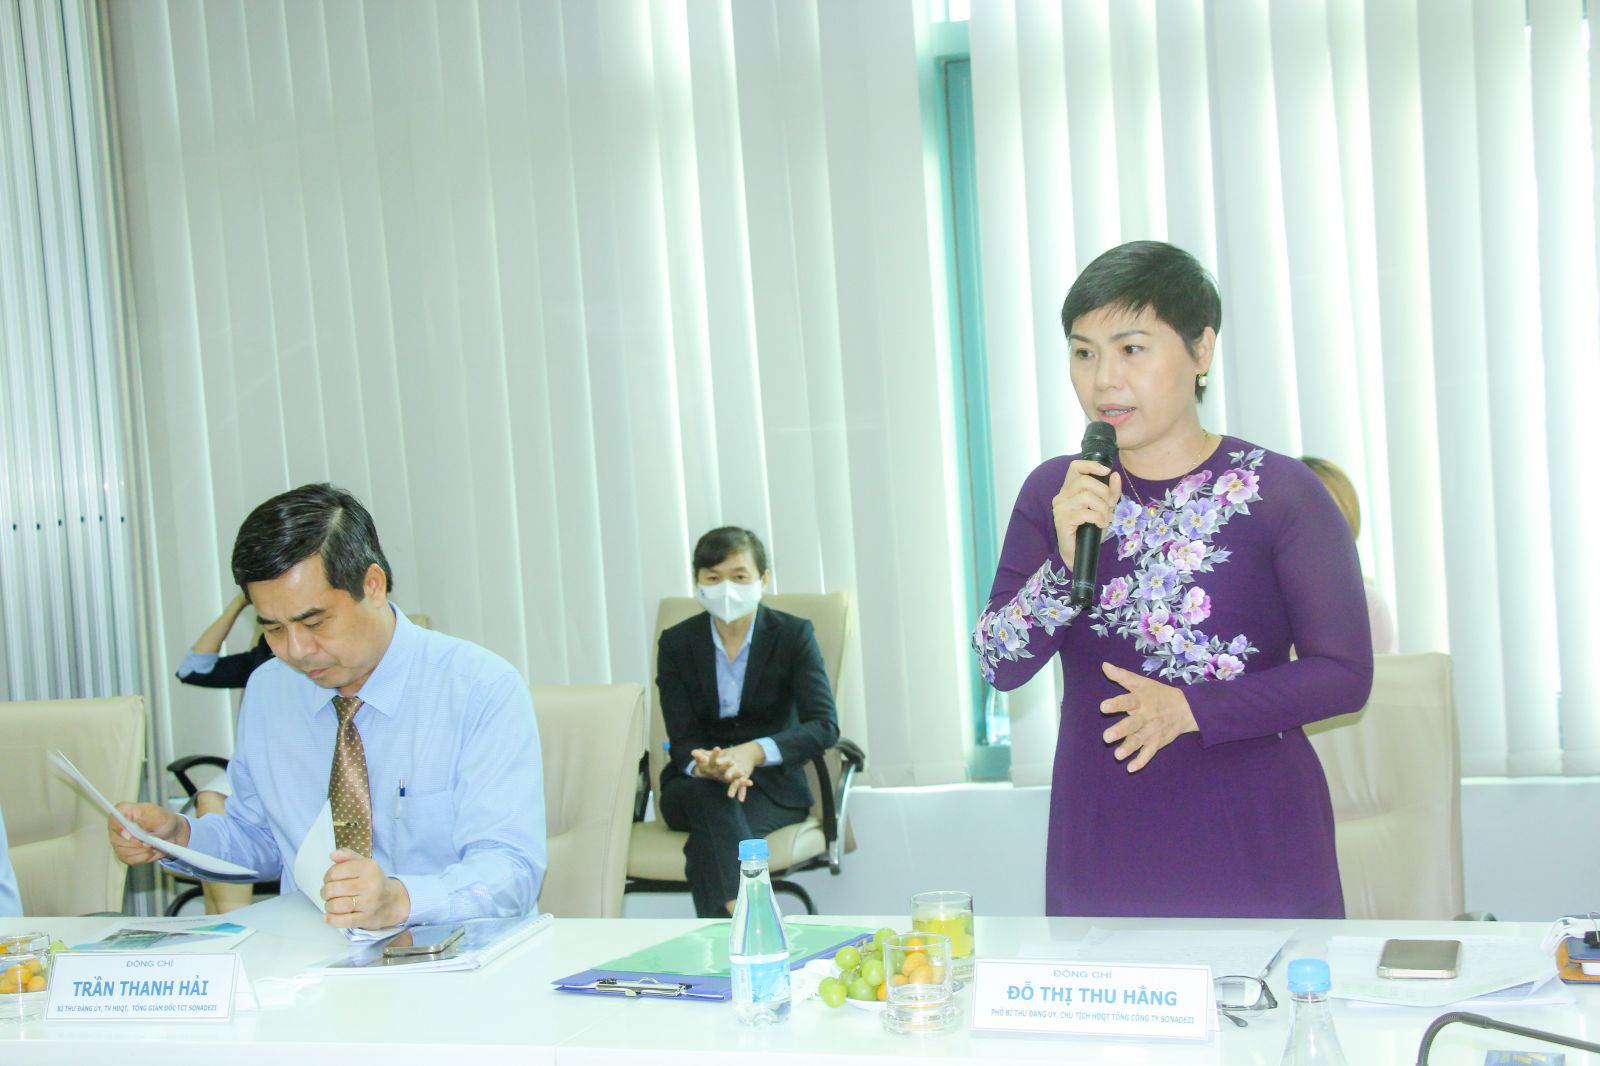 Bà Đỗ Thị Thu Hằng – Chủ tịch HĐQT Sonadezi báo cáo về tình hình hoạt động và định hướng phát triển của Tổng công ty